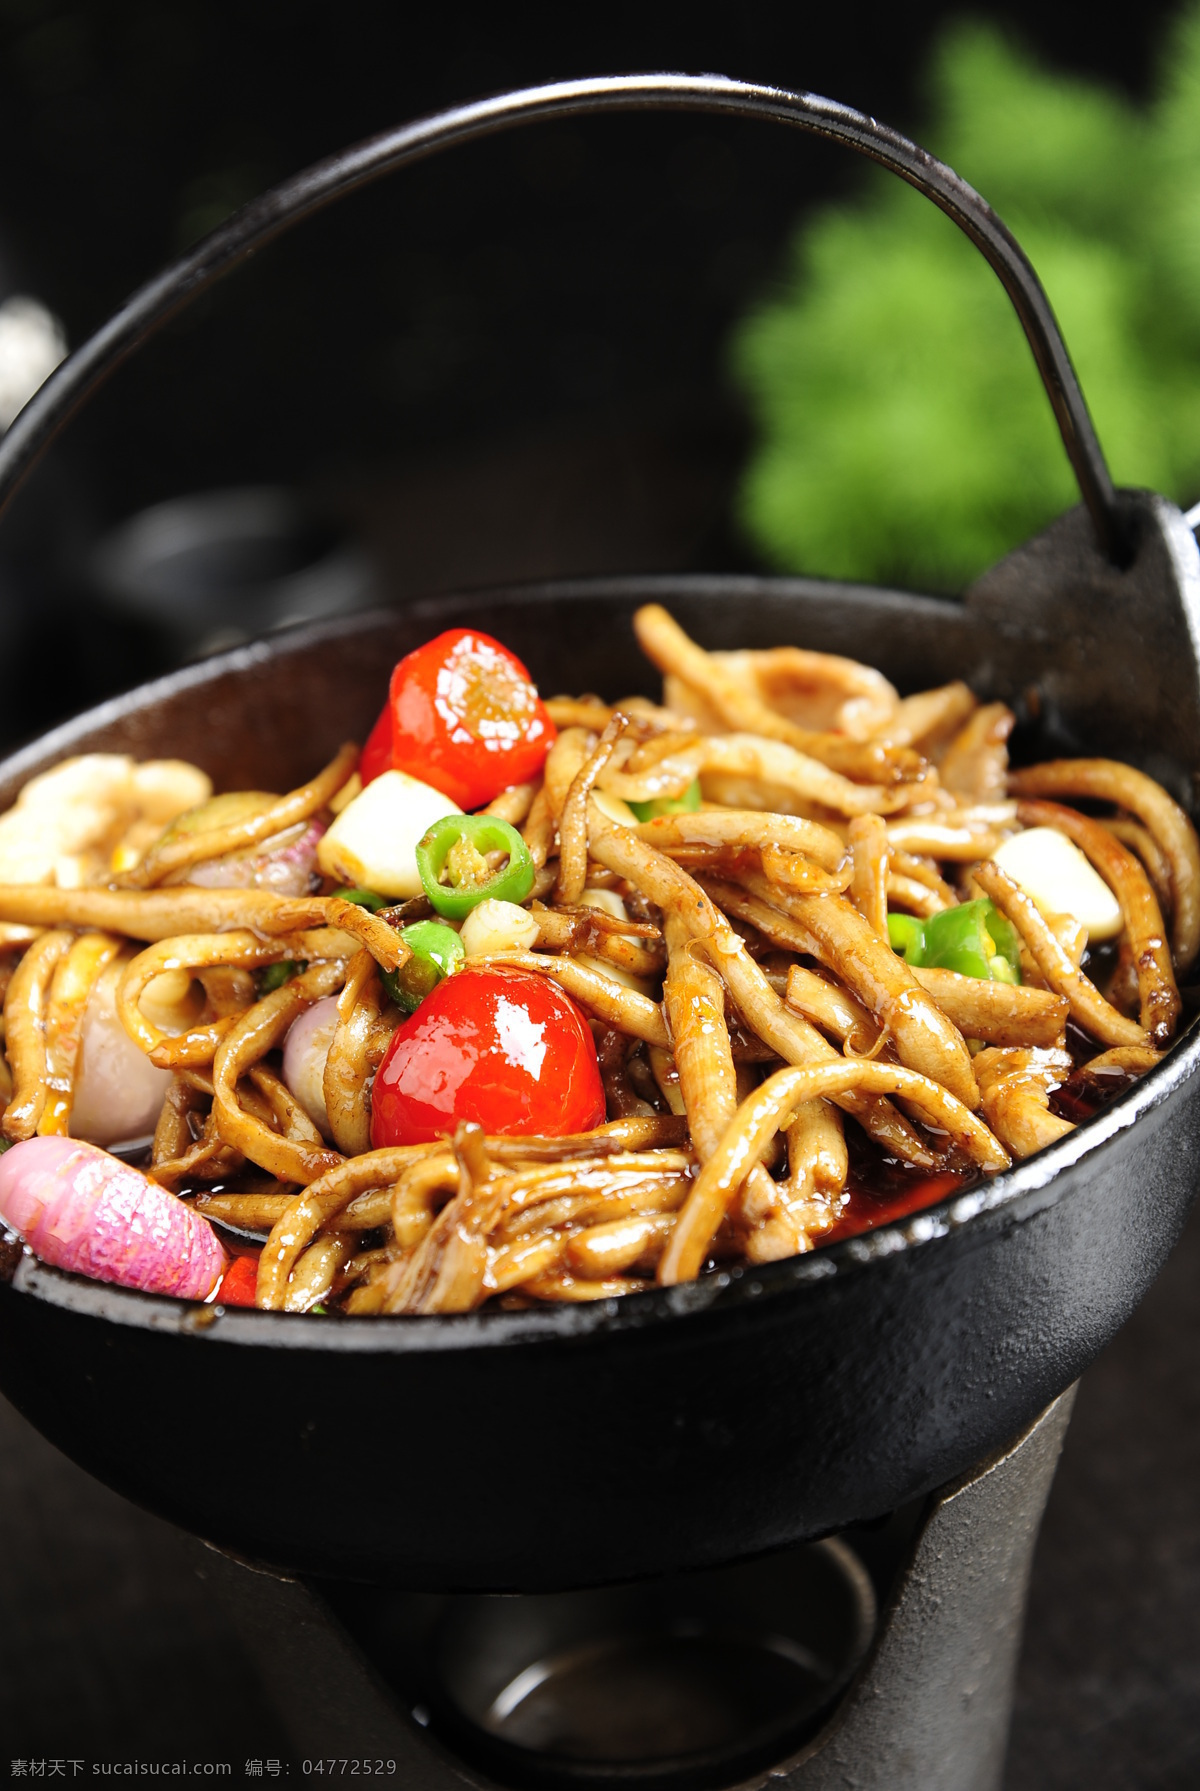 干锅茶树菇 干锅 茶树菇 美食 美味 大片 餐饮美食 传统美食